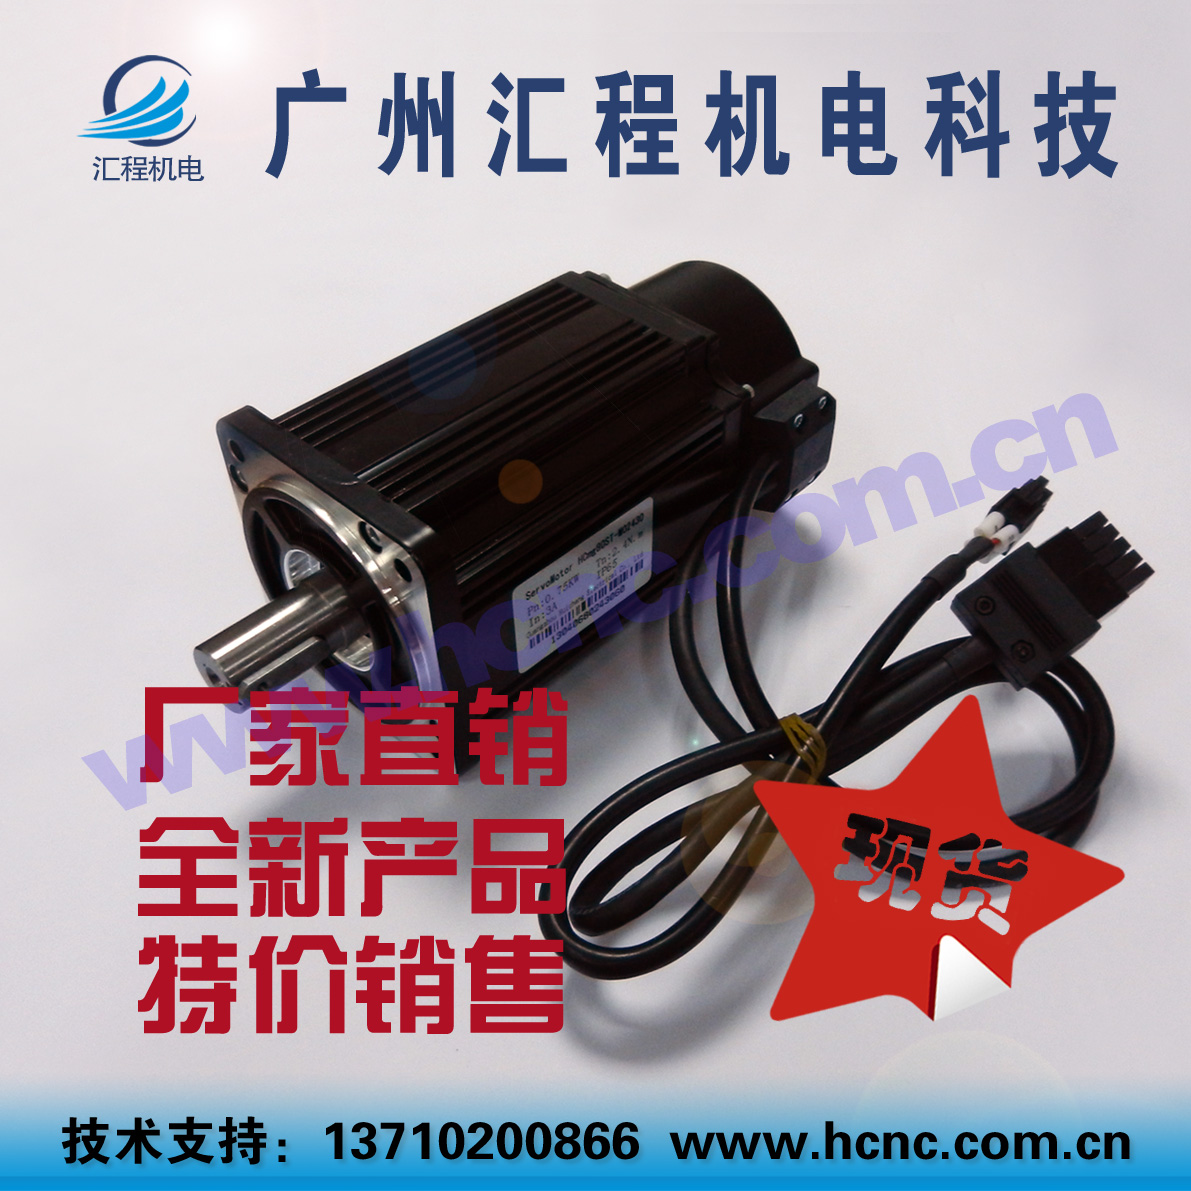 HC*80ST-M02430和80ST-C02430L4交流伺服电机(750W,0.75Kw,2.4Nm)